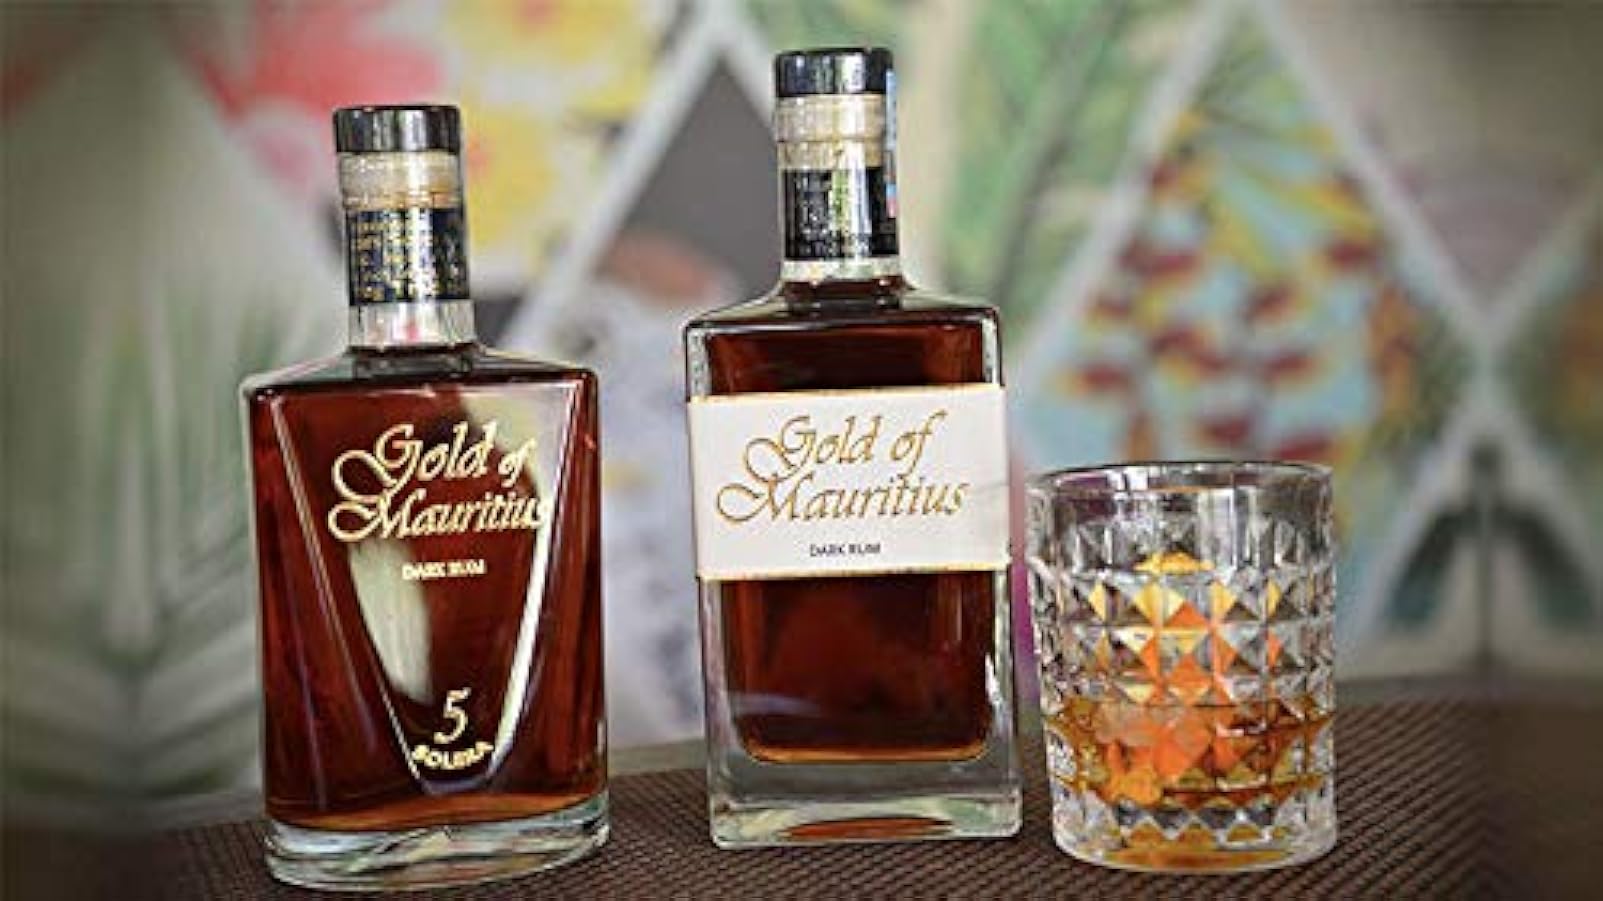 Gold of Mauritius Solera 5 Dark Rum - 700 ml 545017956